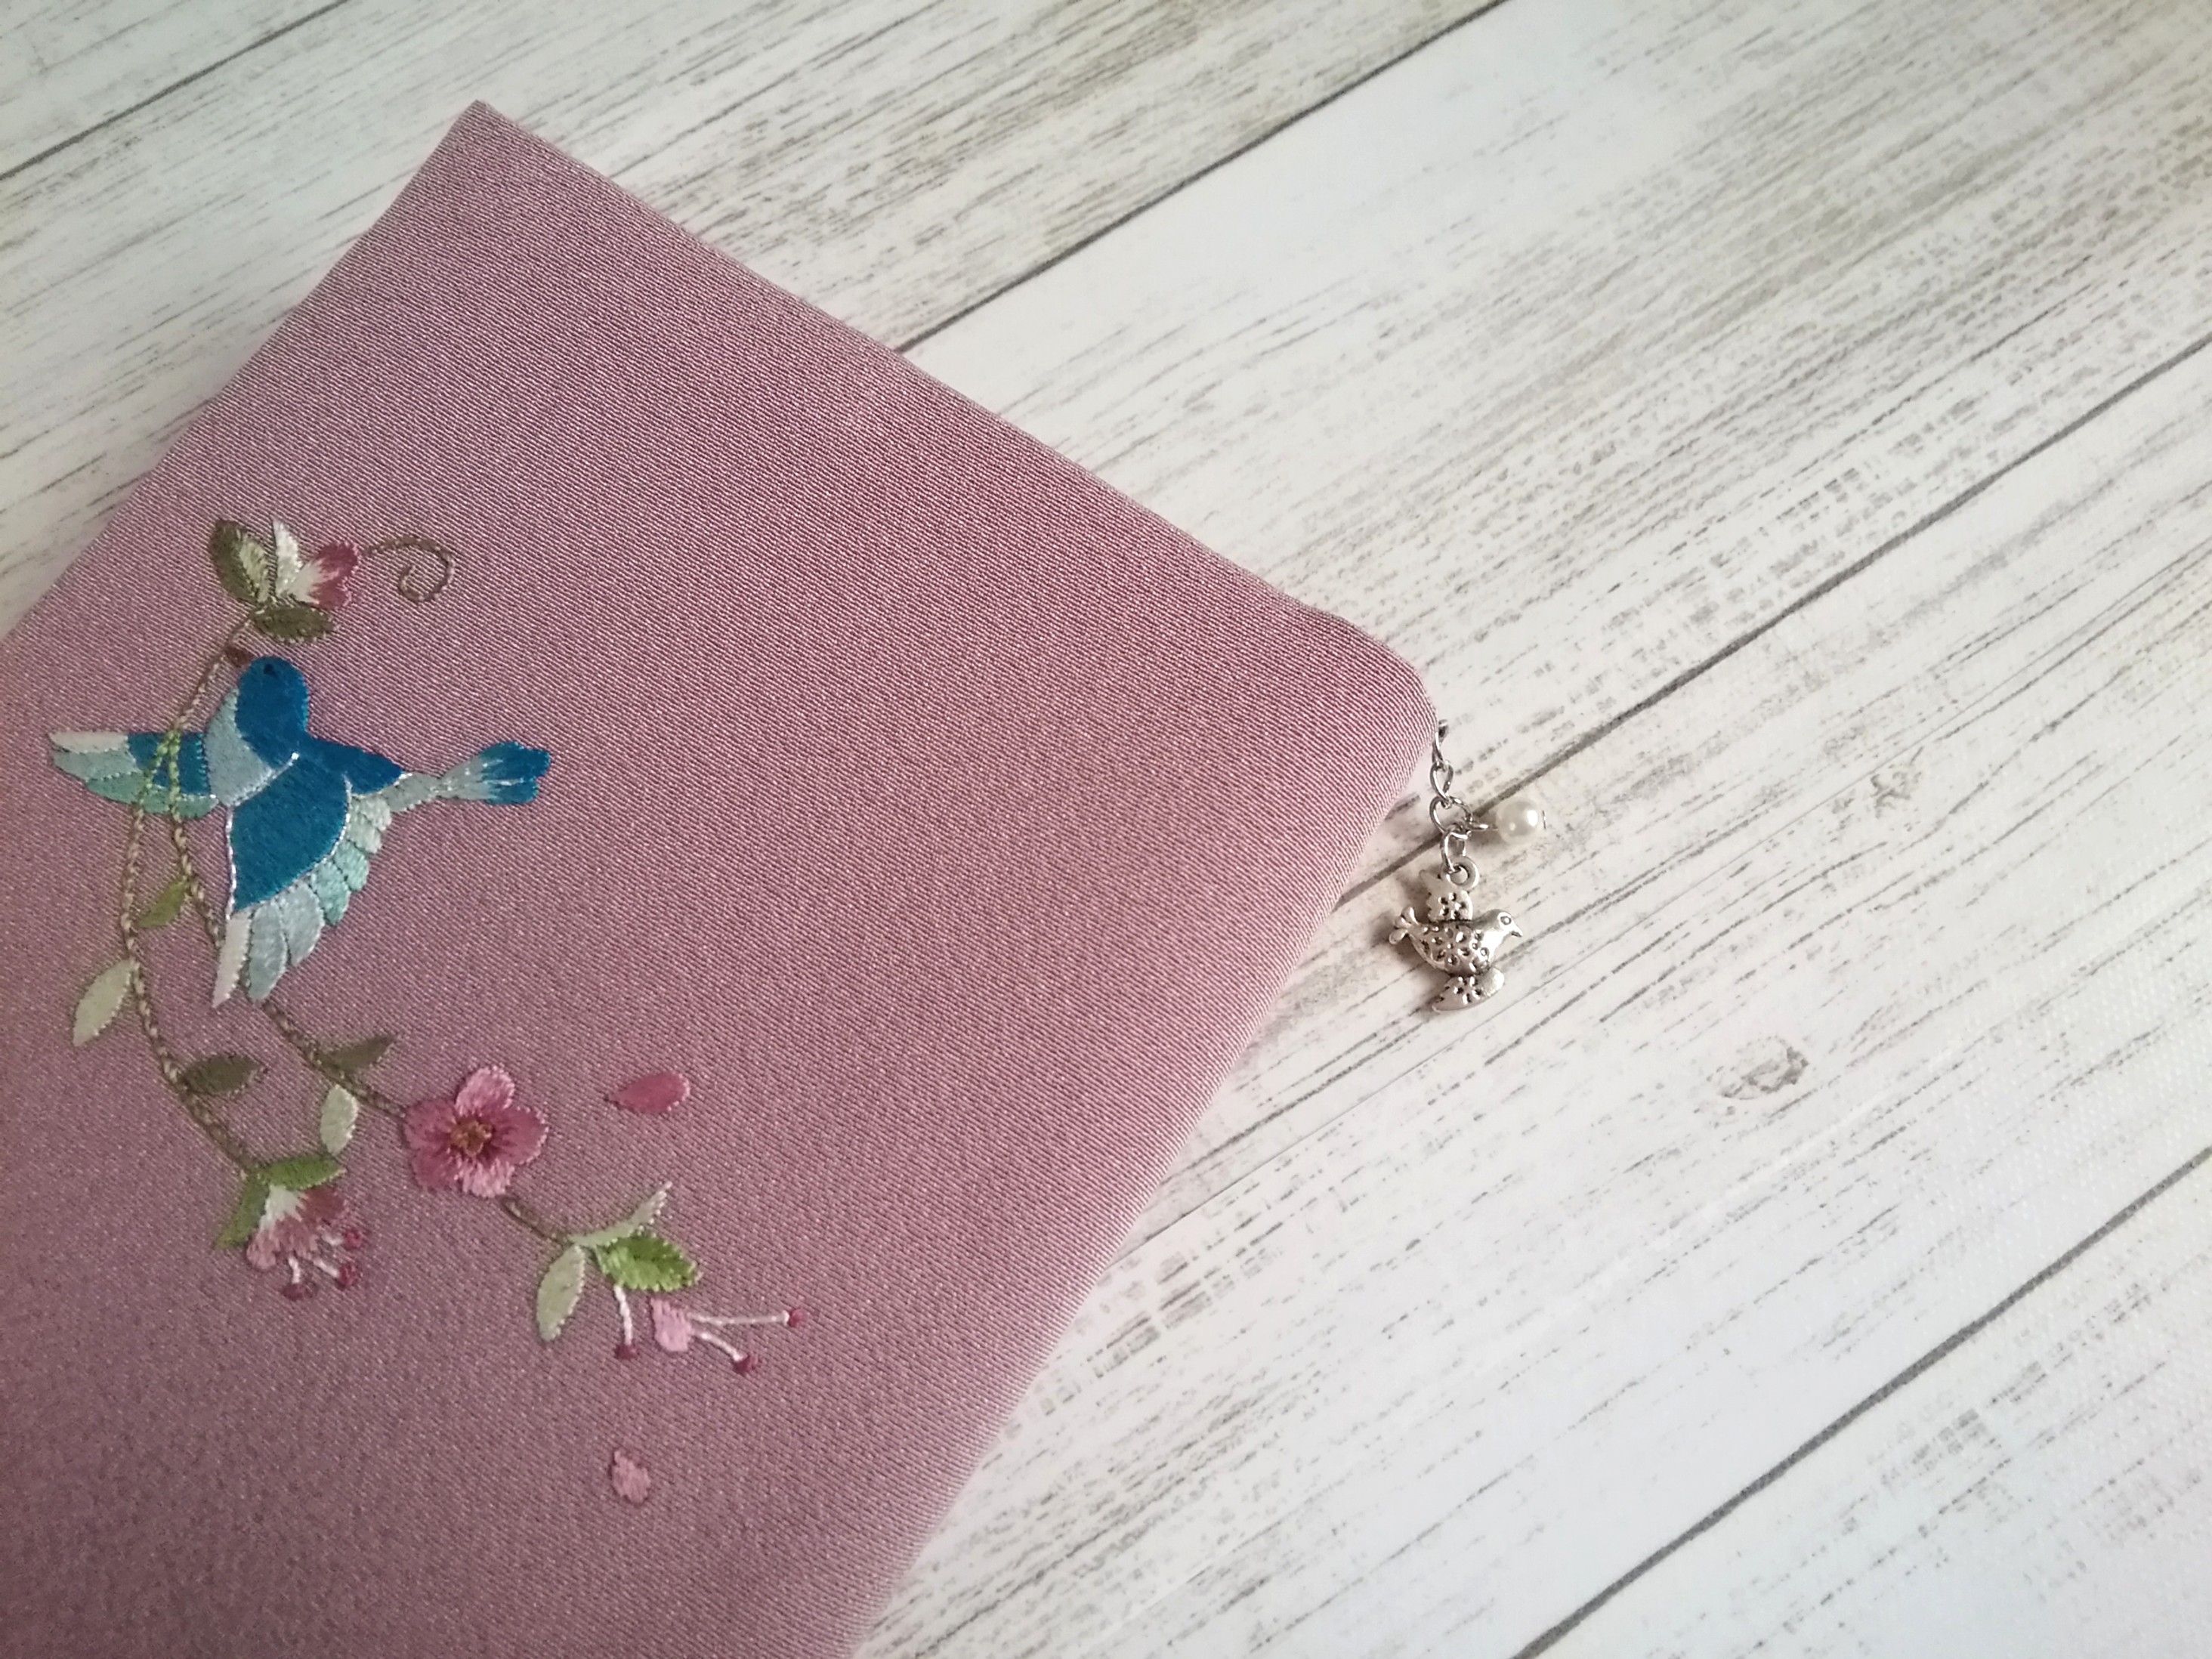 日本刺繍 青い鳥のブックカバー クリアカバー付 Iichi ハンドメイド クラフト作品 手仕事品の通販